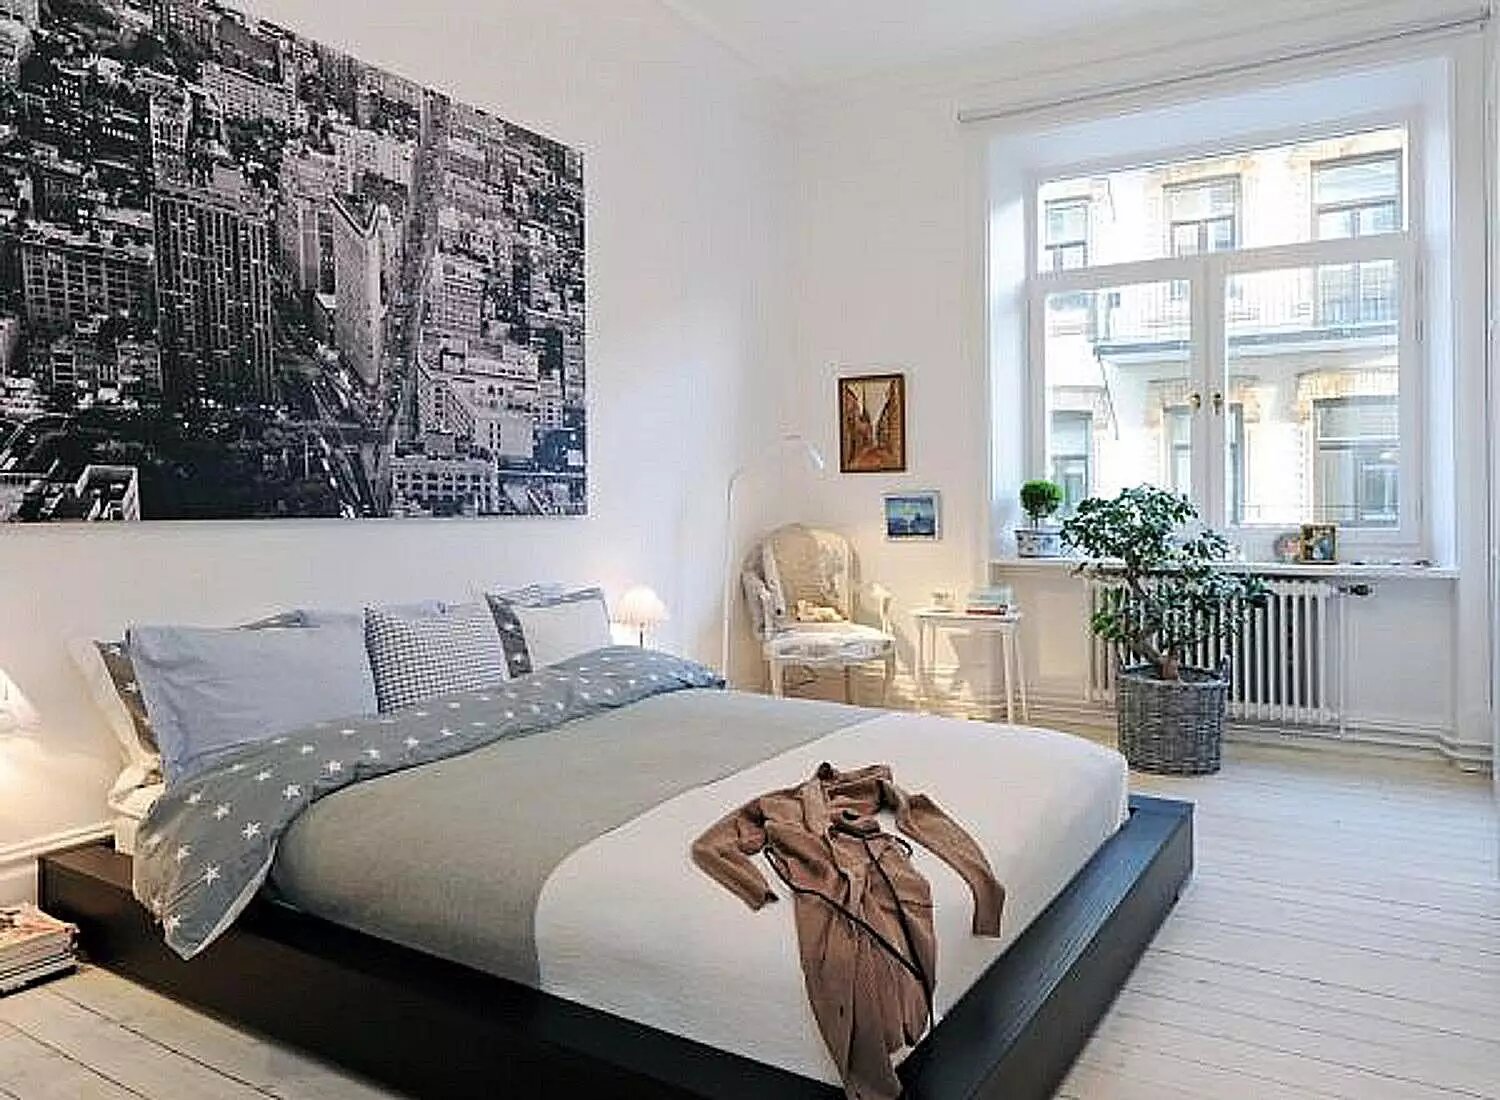 Căn phòng này mang đến sự ấn tượng nhờ bức tranh thành phố được in đen trắng cực to được treo phía đầu giường.